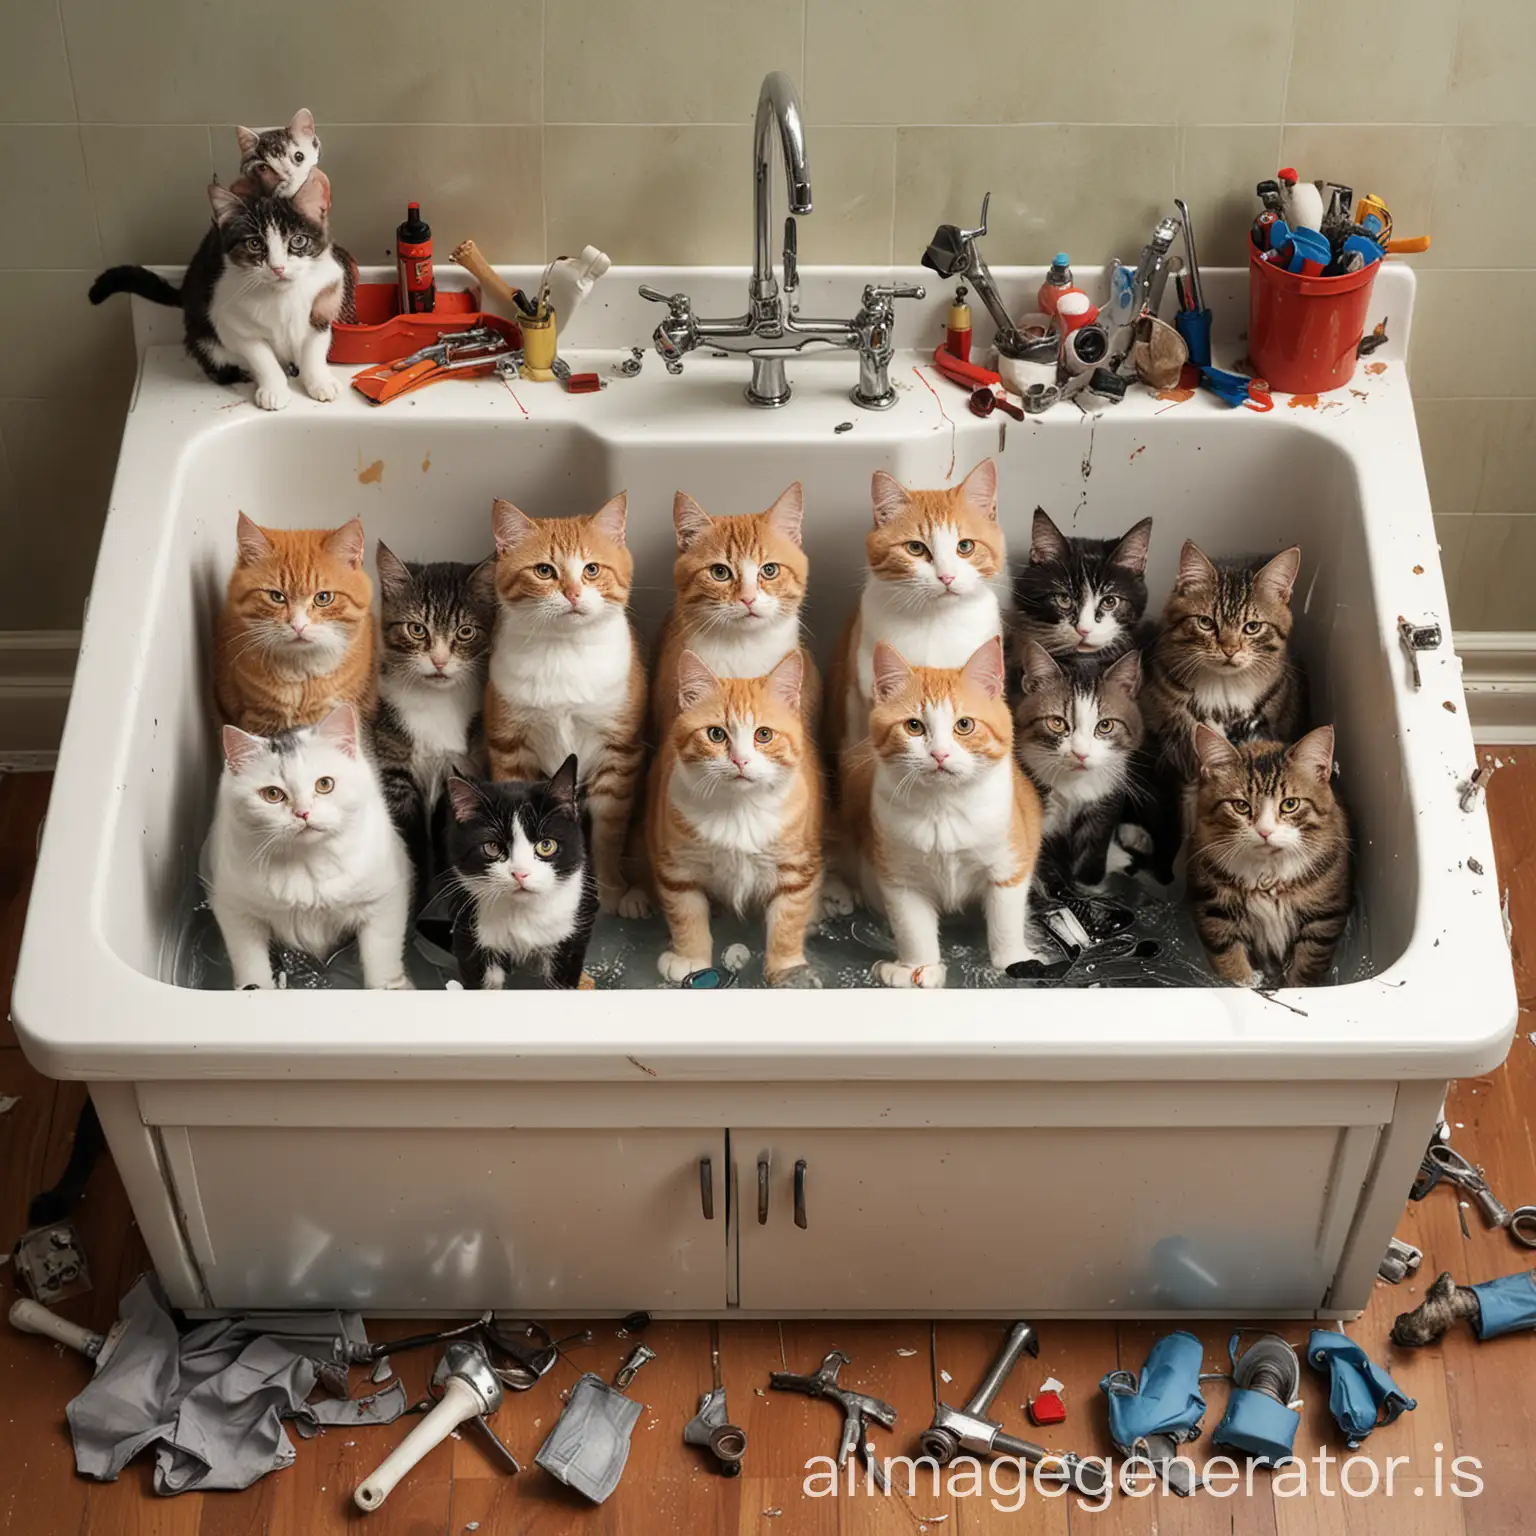 Mechanic-Cats-Repairing-Broken-Sink-with-Tools